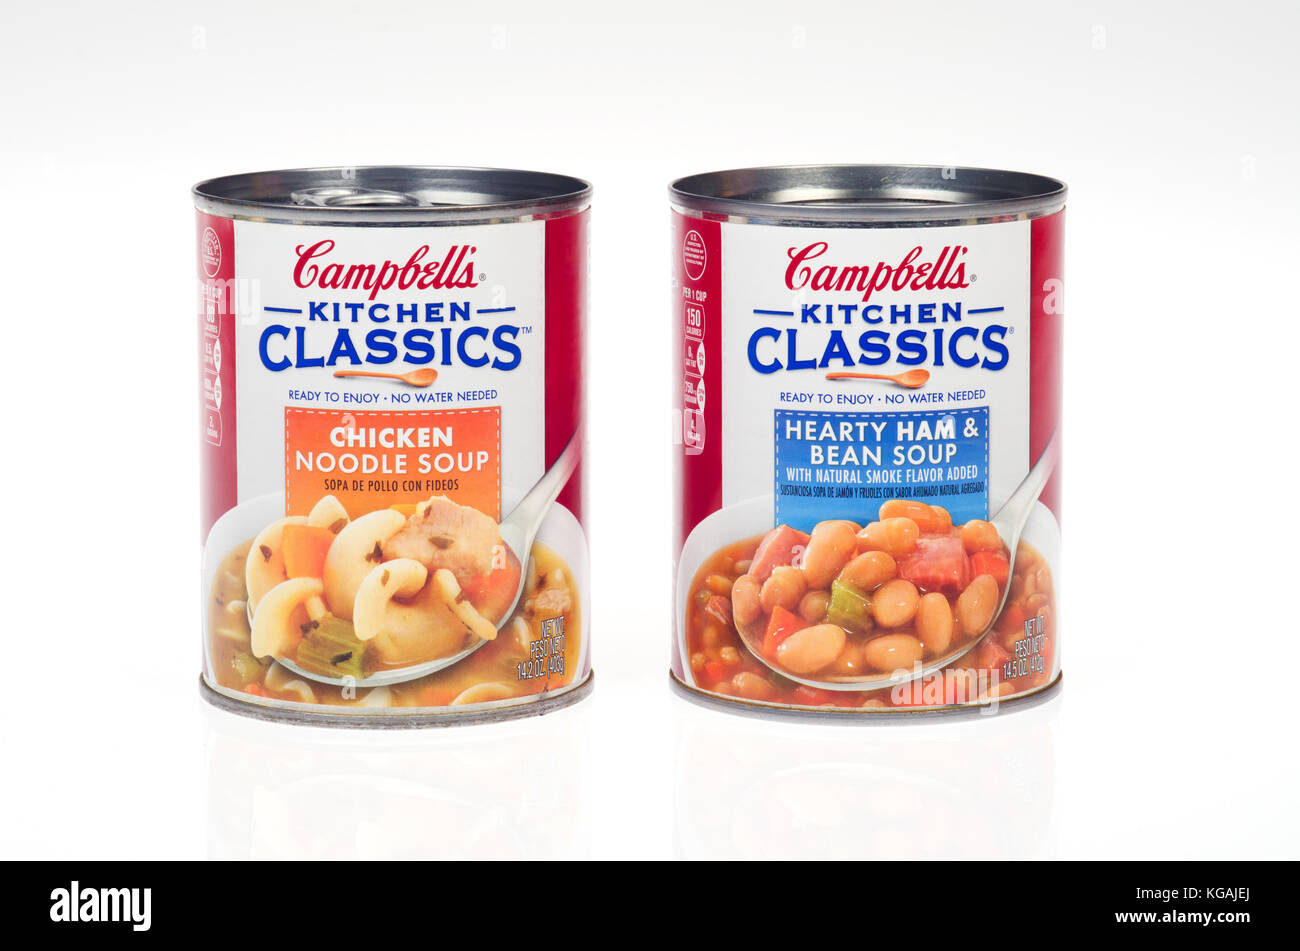 2 latas de sopa Campbell's Kitchen clásicos, 1 de pollo con fideos y 1 delicioso jamón y Bean Foto de stock